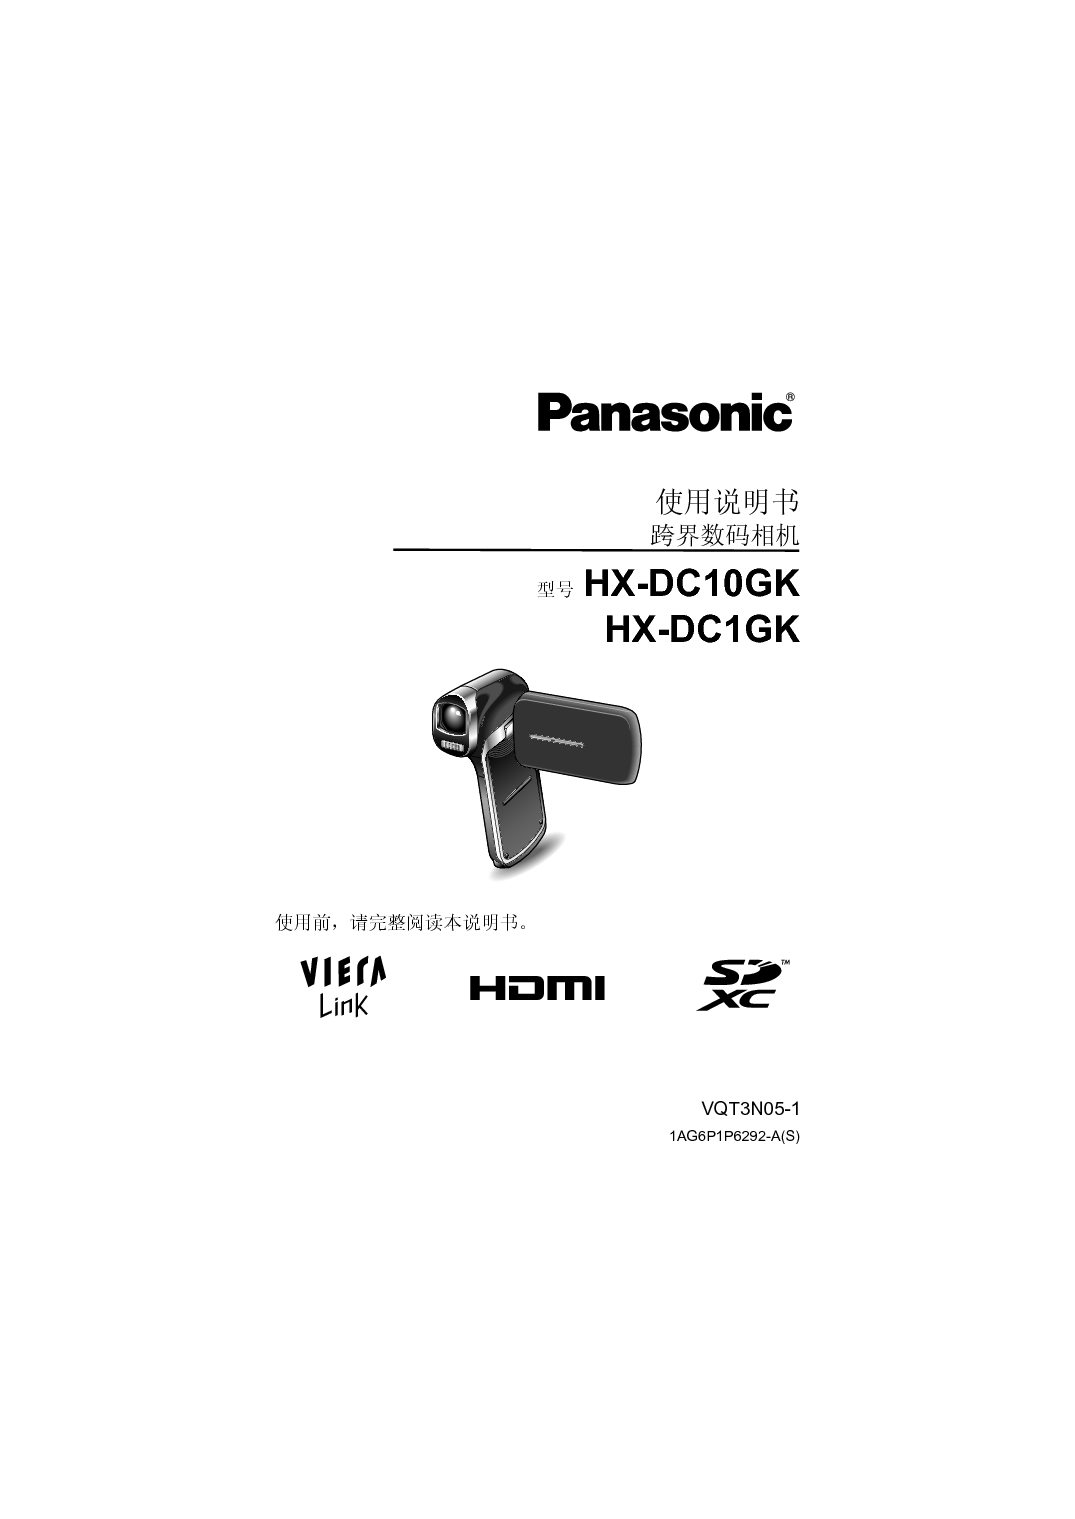 松下 Panasonic HX-DC10GK 说明书 封面